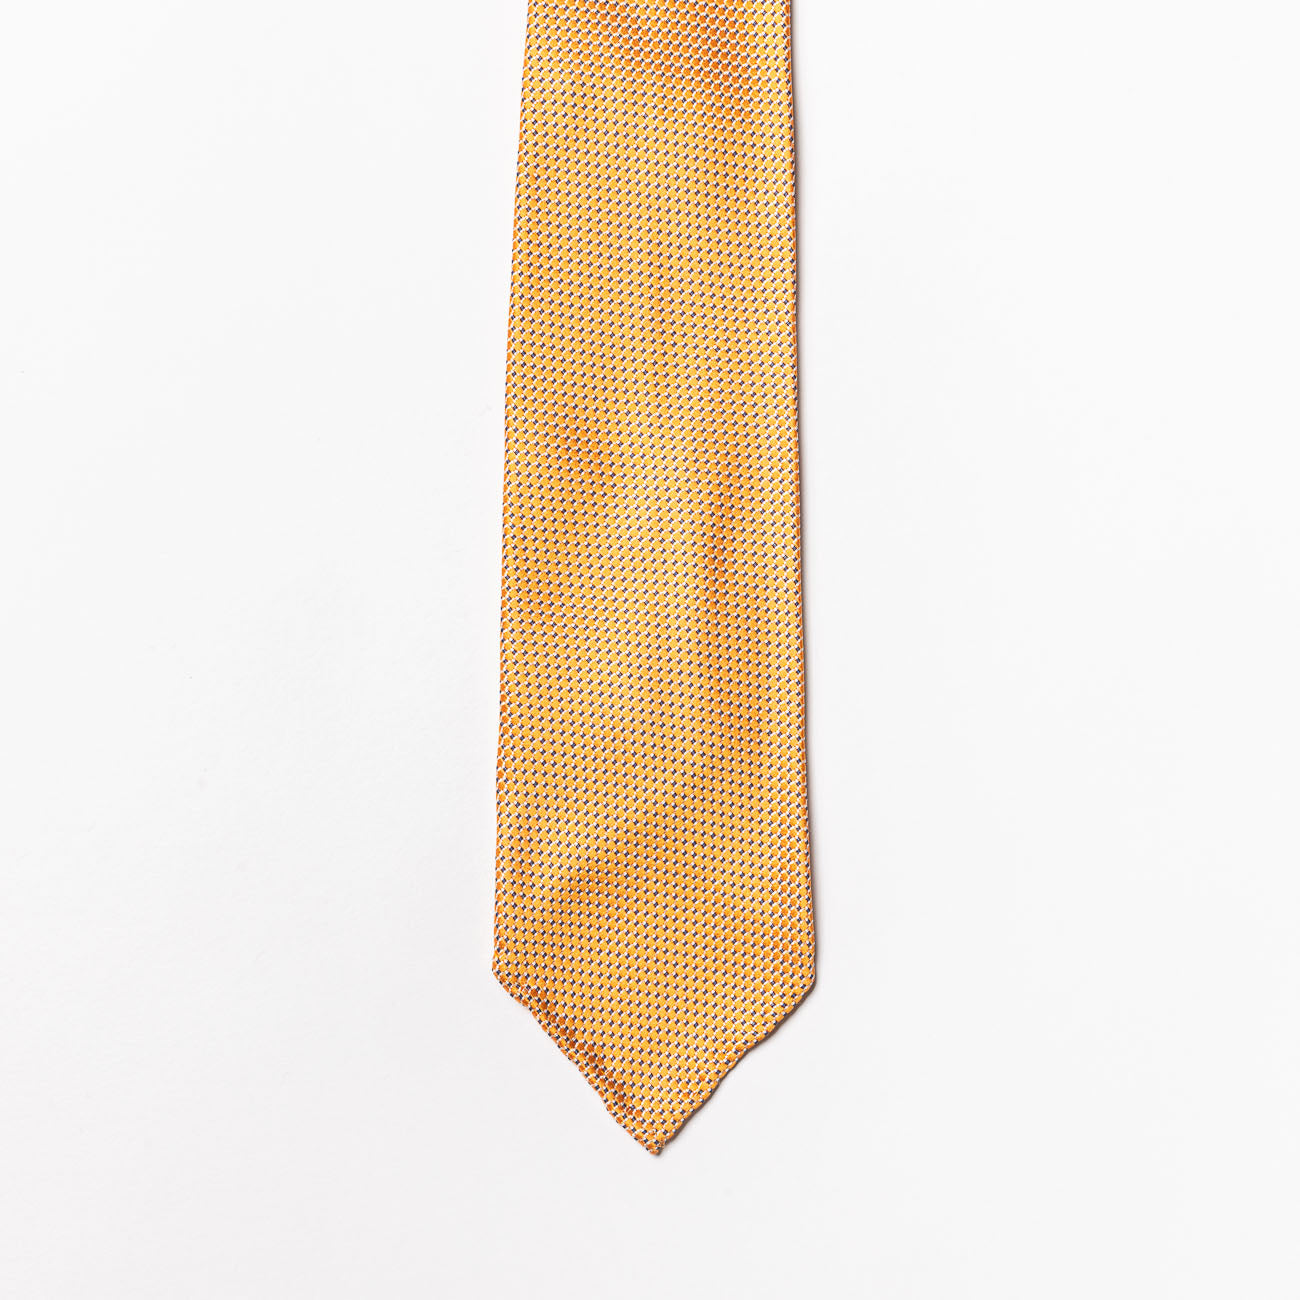 Cravatta sfoderata Tailor’s and Ties in seta gialla